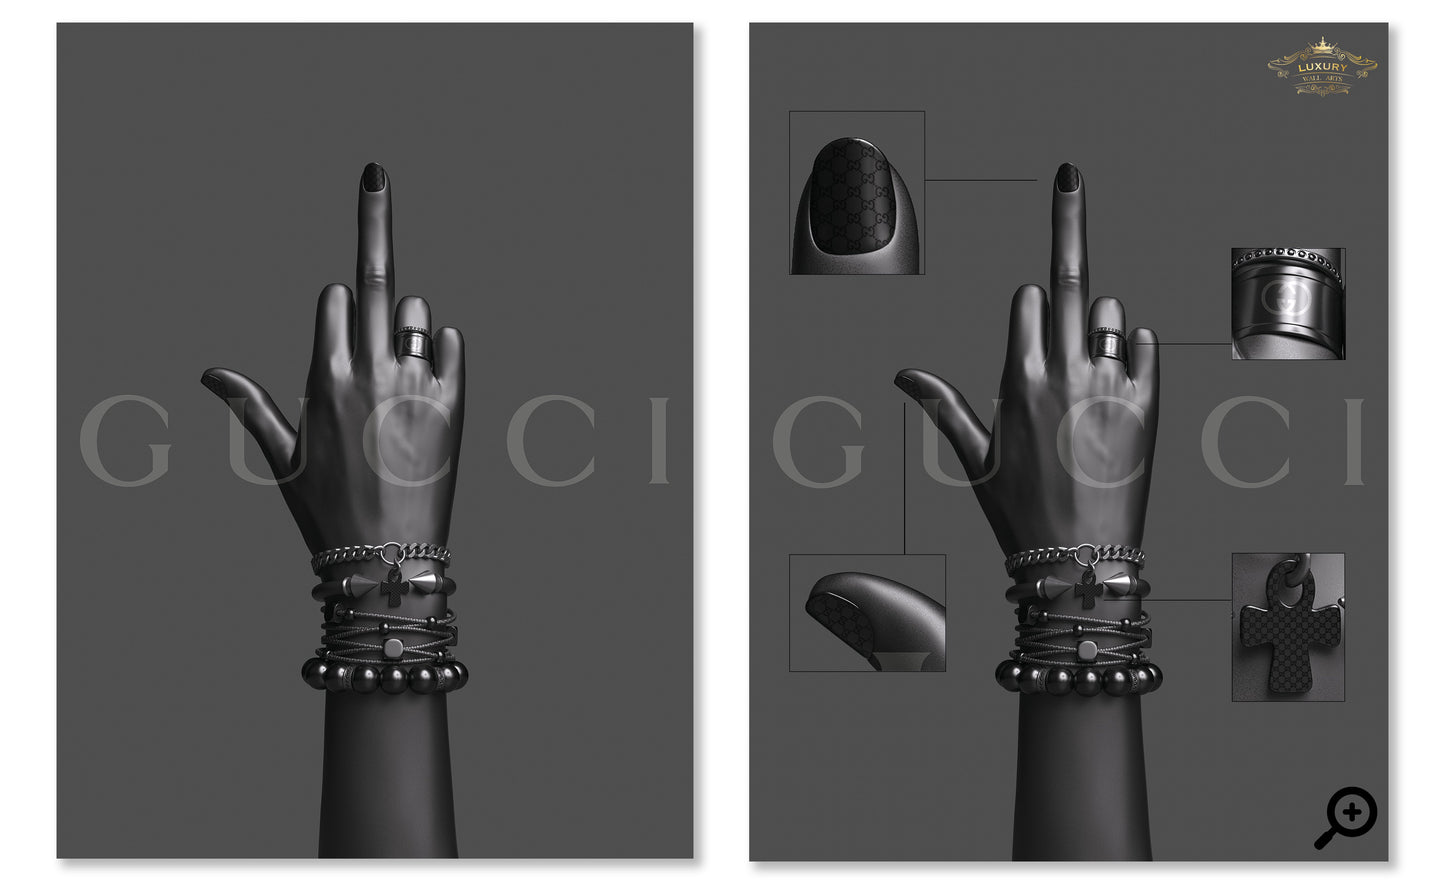 Gucci Power Posters Prenten En Visuele Kunstwerken